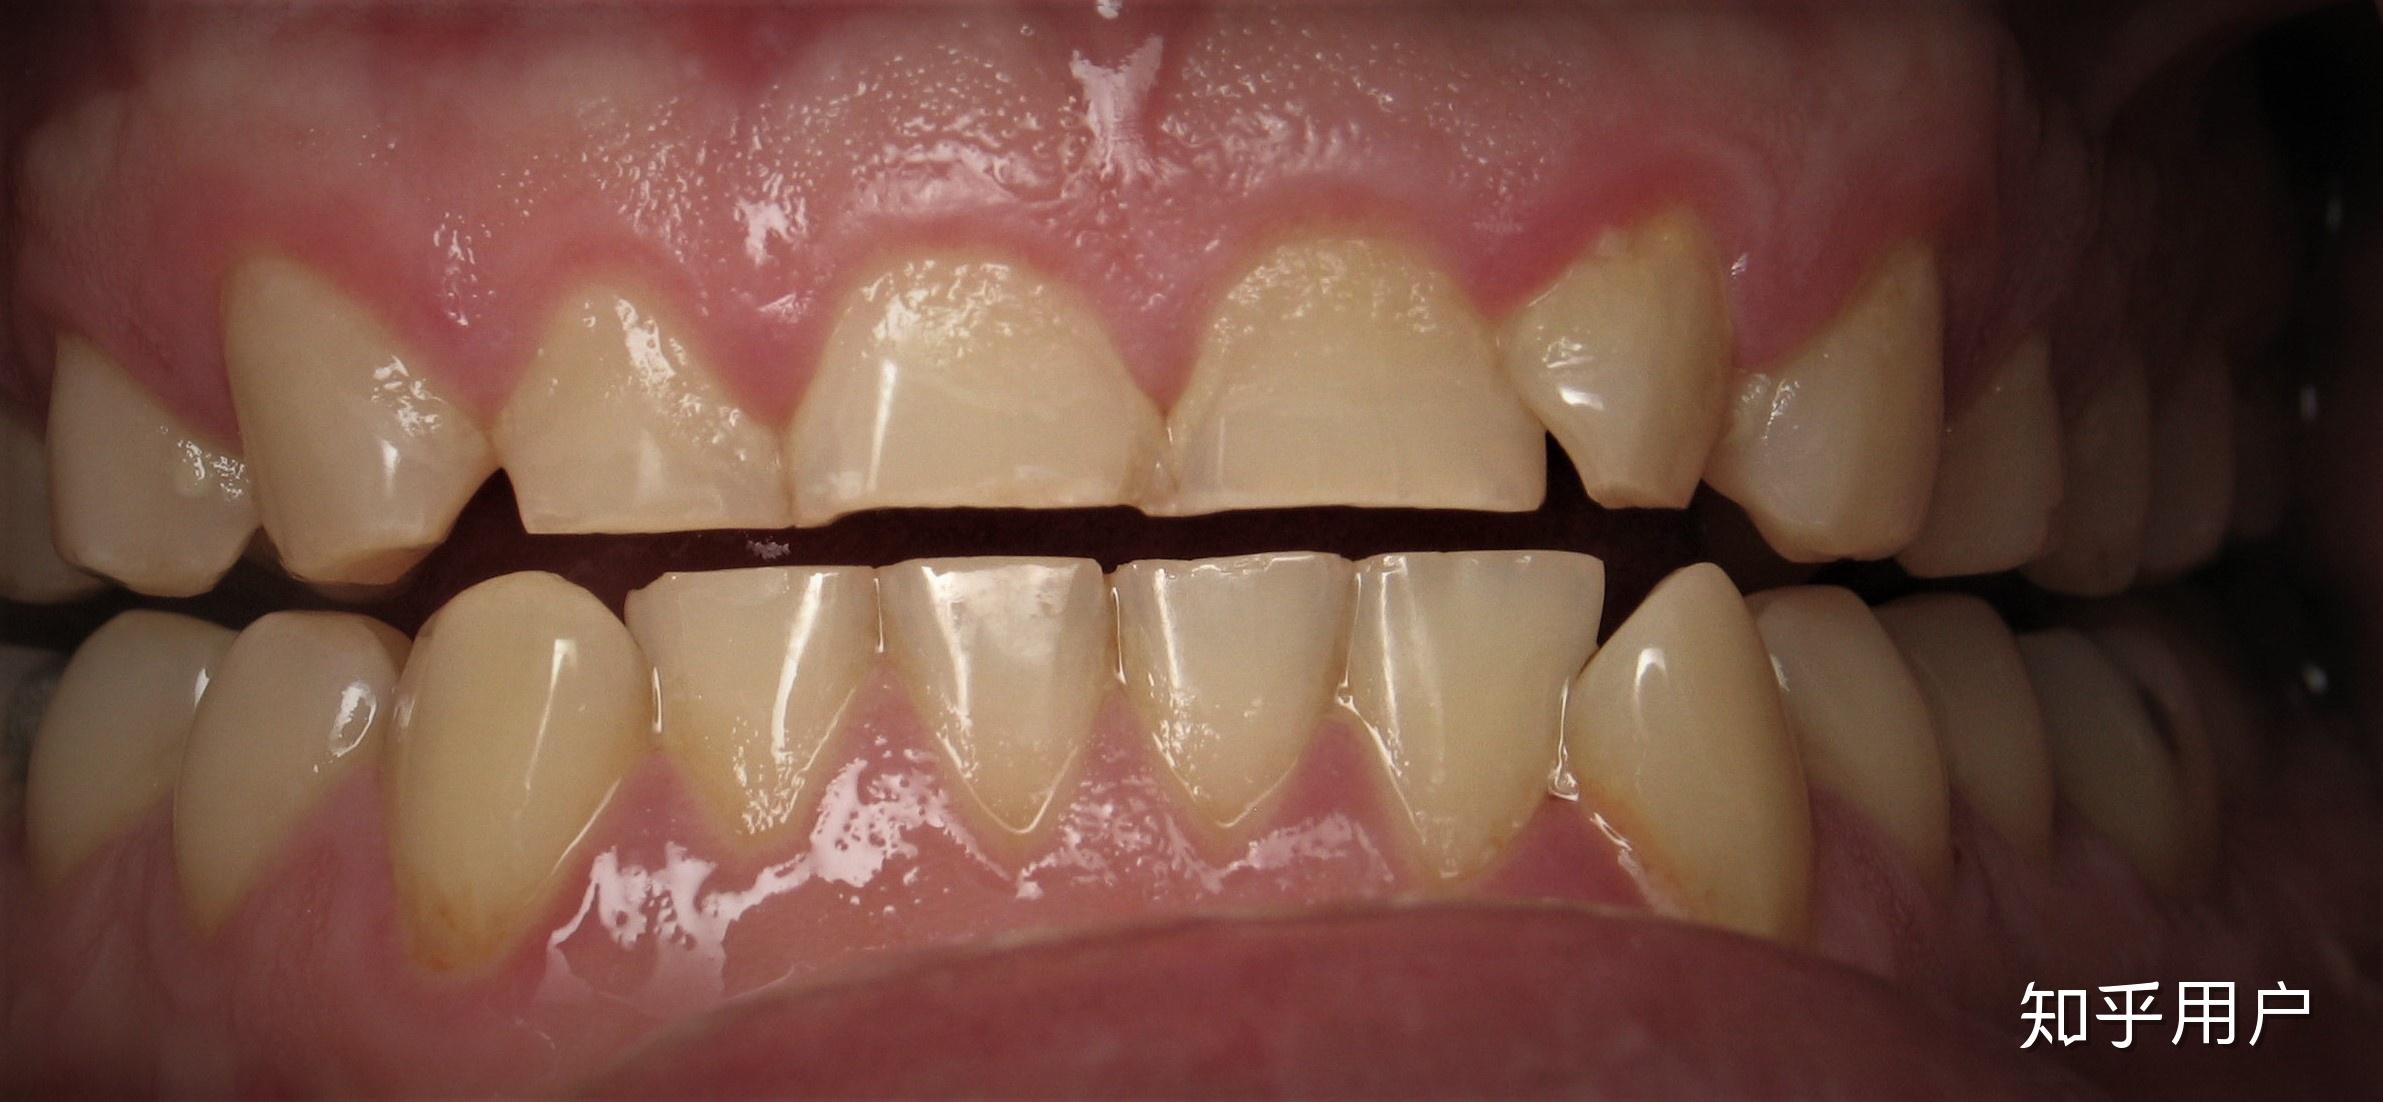 隐形矫治Ⅱ类减数第一前磨牙内收伴直立磨牙浅析-口腔科学-医学